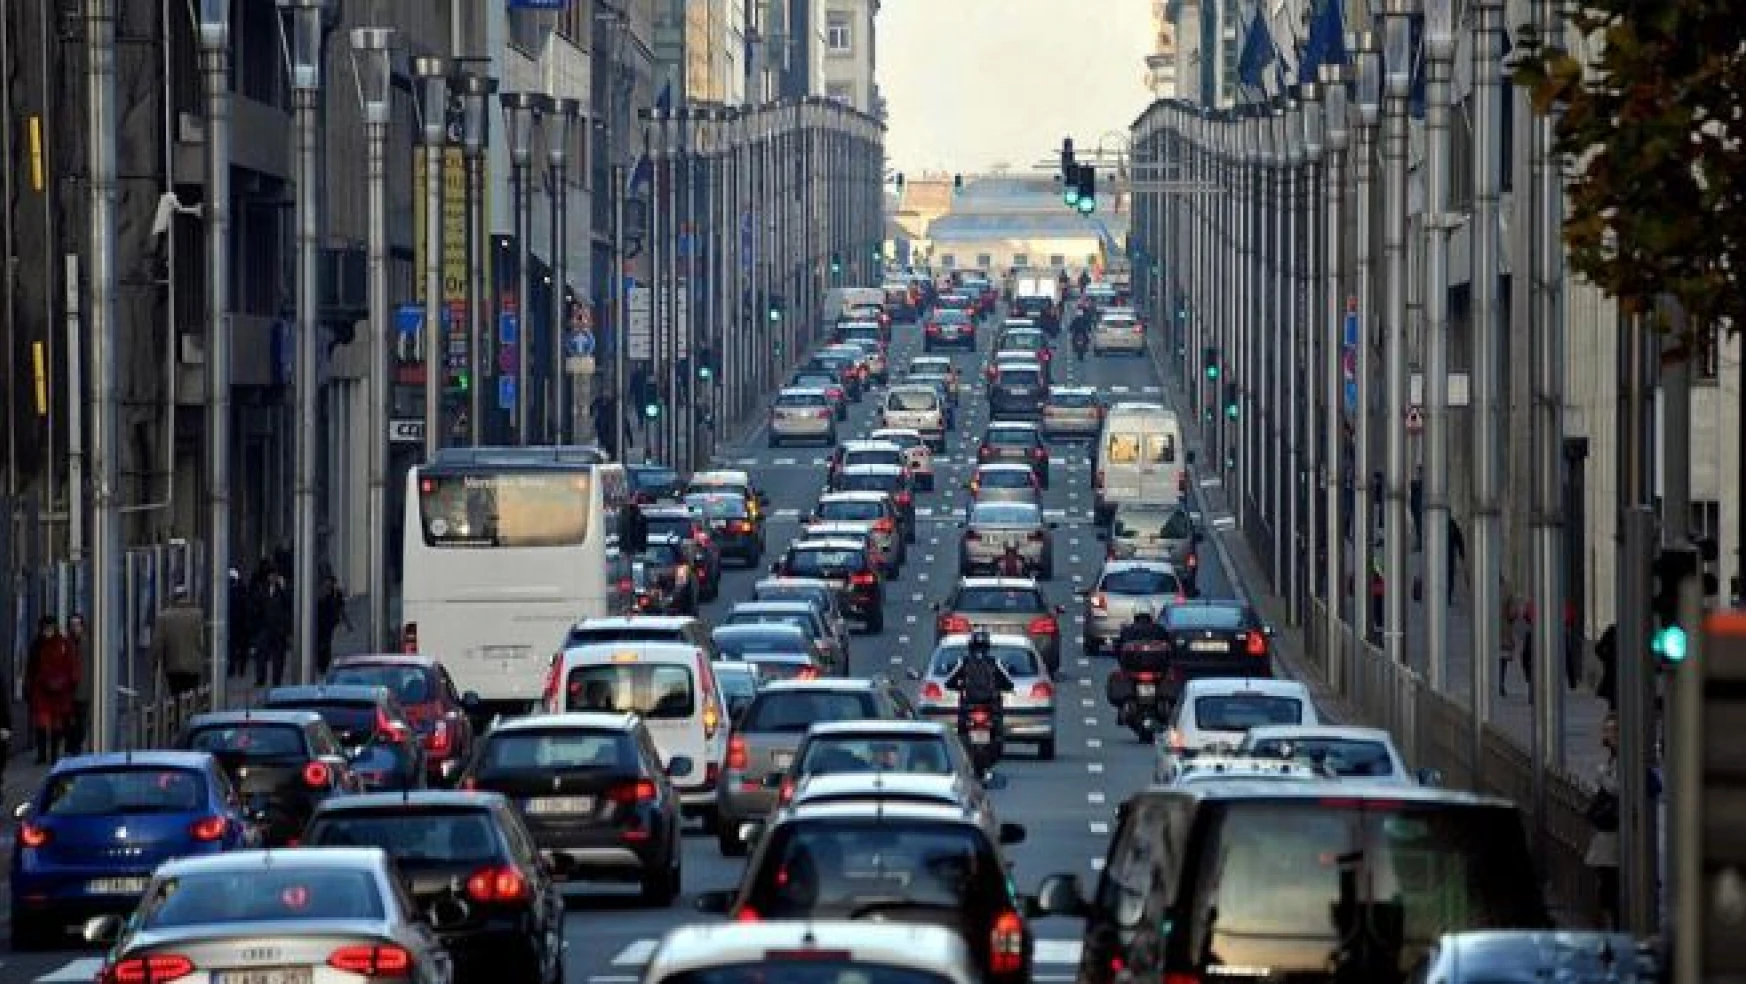 Brüksel'deki trafiğin suçlusu farelermiş